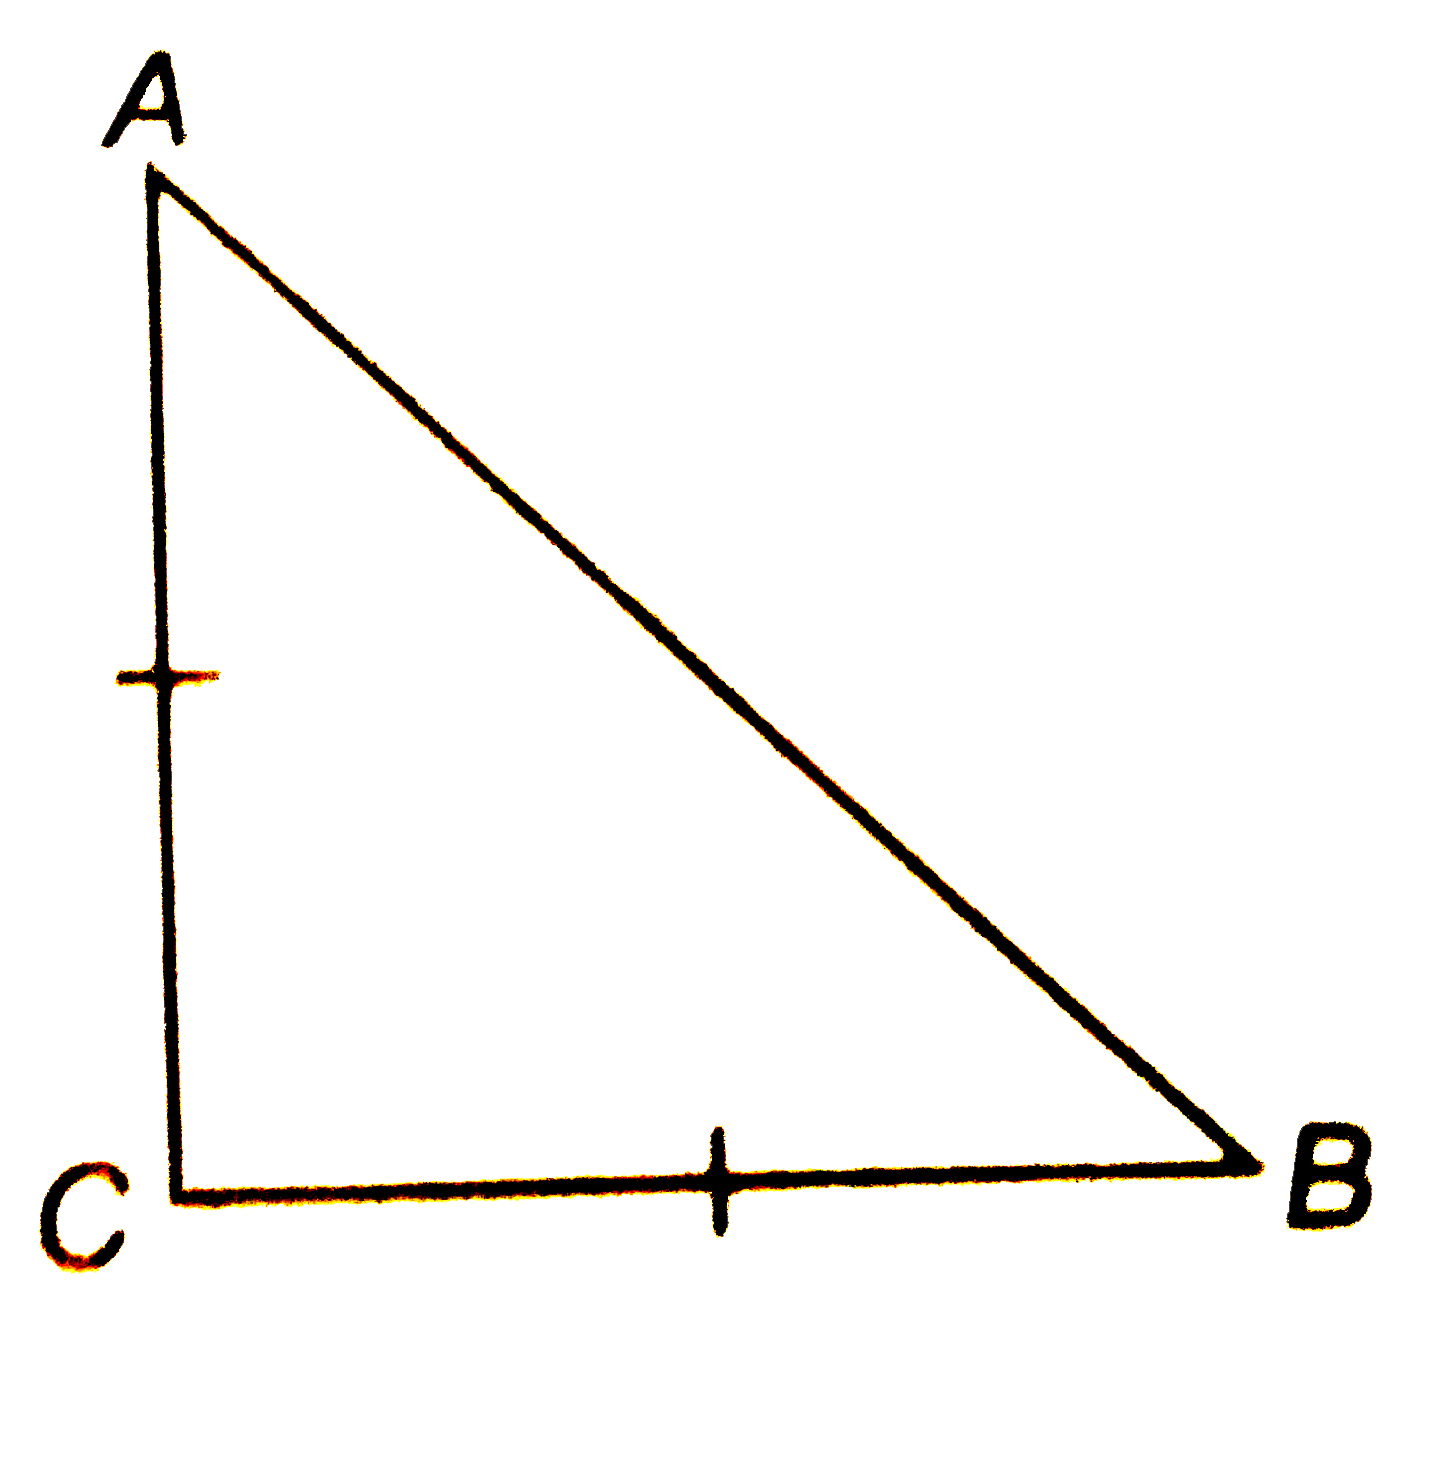 ABC एक समद्विबाहु त्रिभुज है जिसमे AC = BC है यदि AB^2=2AC^2  है तो सिद्ध कीजिये कि  DeltaABC  एक समकोण त्रिभुज है